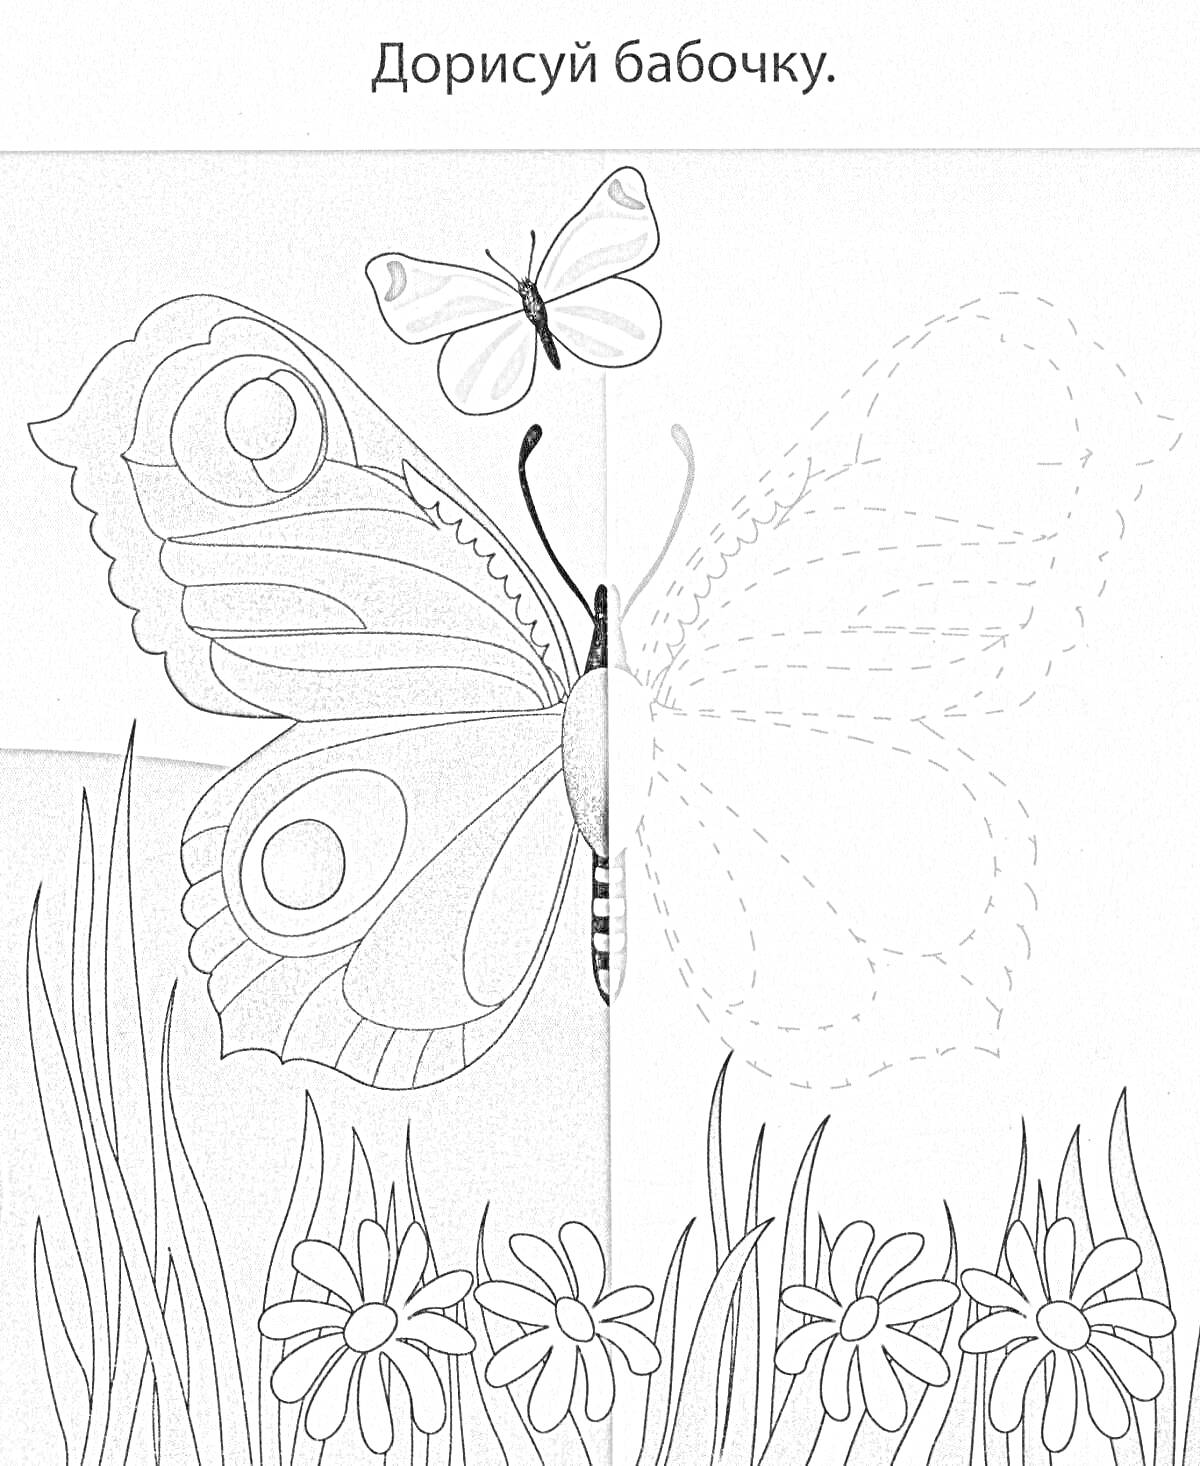 Раскраска Раскраска бабочки с заданием дорисовать бабочку на заднем фоне из травы и ромашек